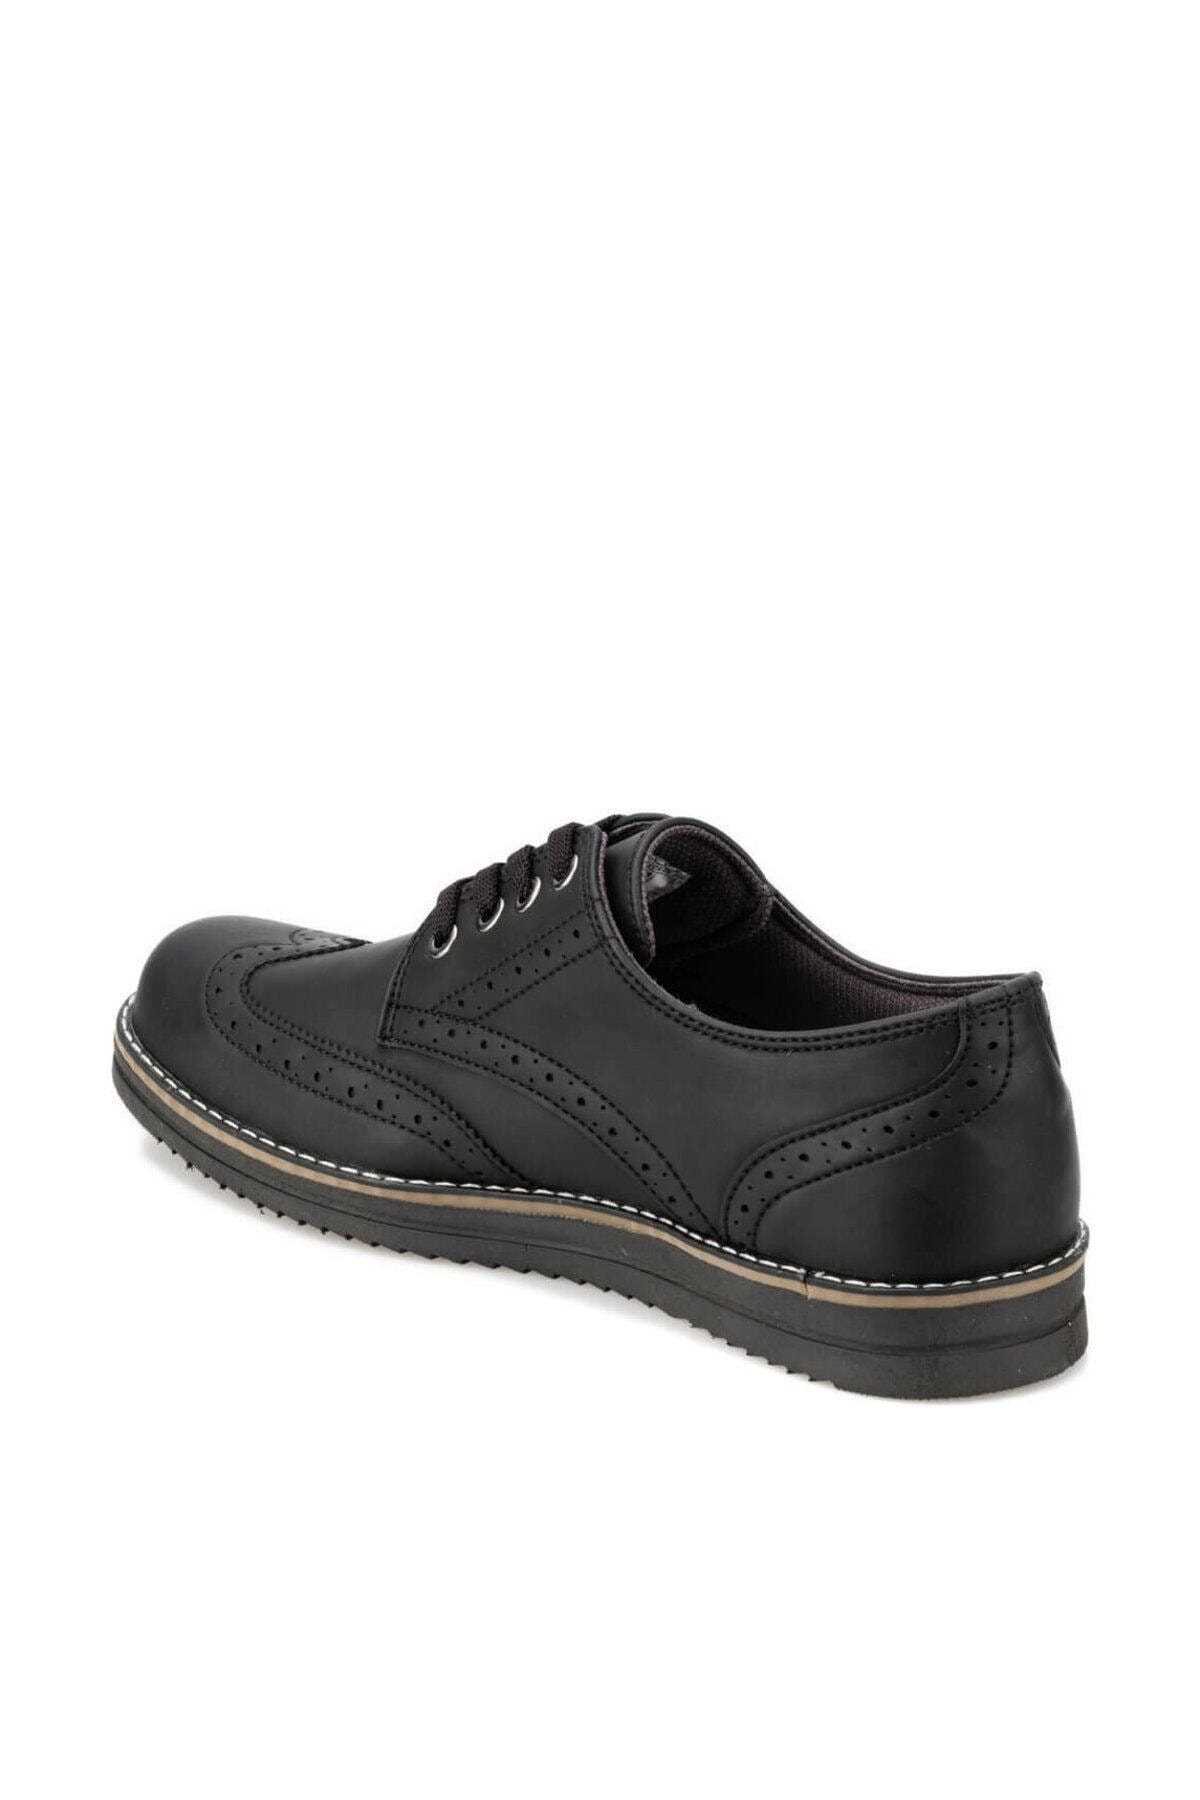 فروشگاه کفش کلاسیک مردانه تابستانی برند Polaris رنگ مشکی کد ty29743659